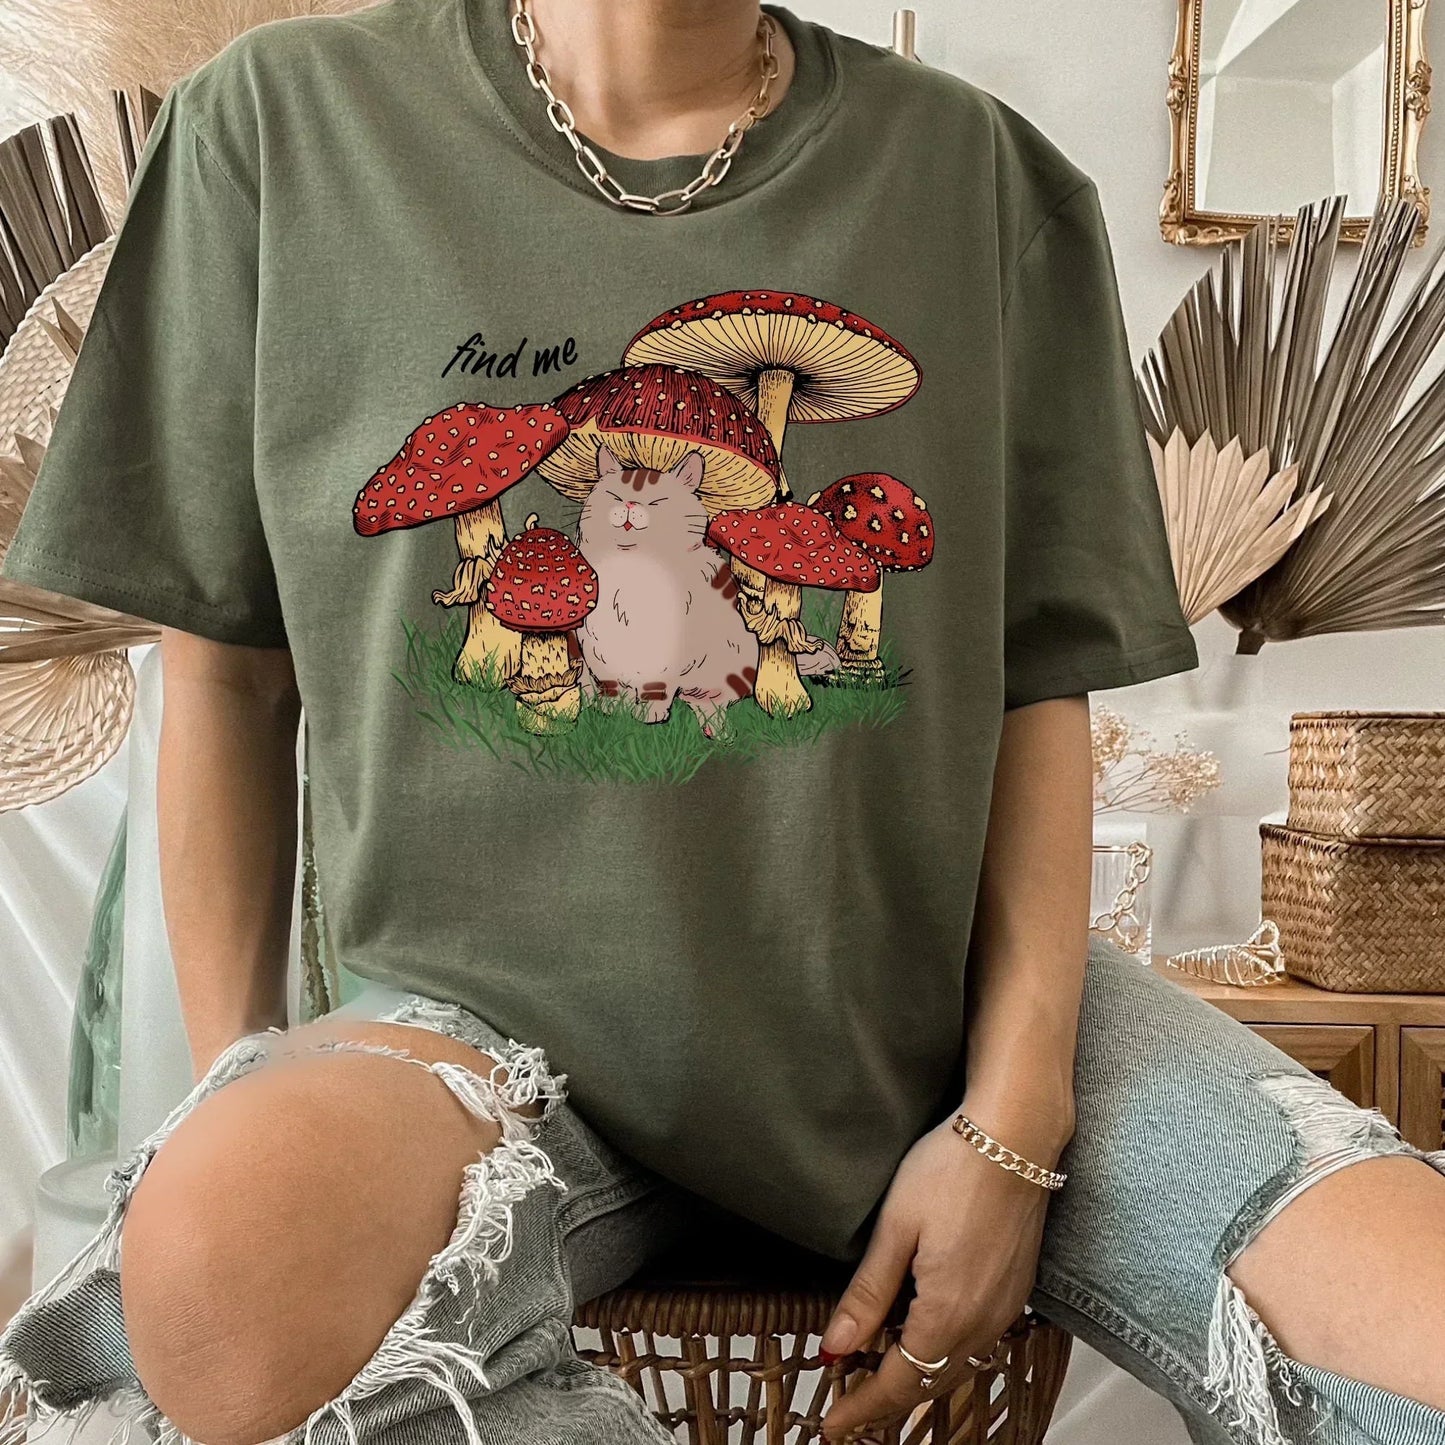 Magic Mushroom Shirt, Psilocybine Mushroom Sweater, Celestial Shirt, Dark Academia, Goblincore Clothing, Cat Sweatshirt, Moon Child Shirt